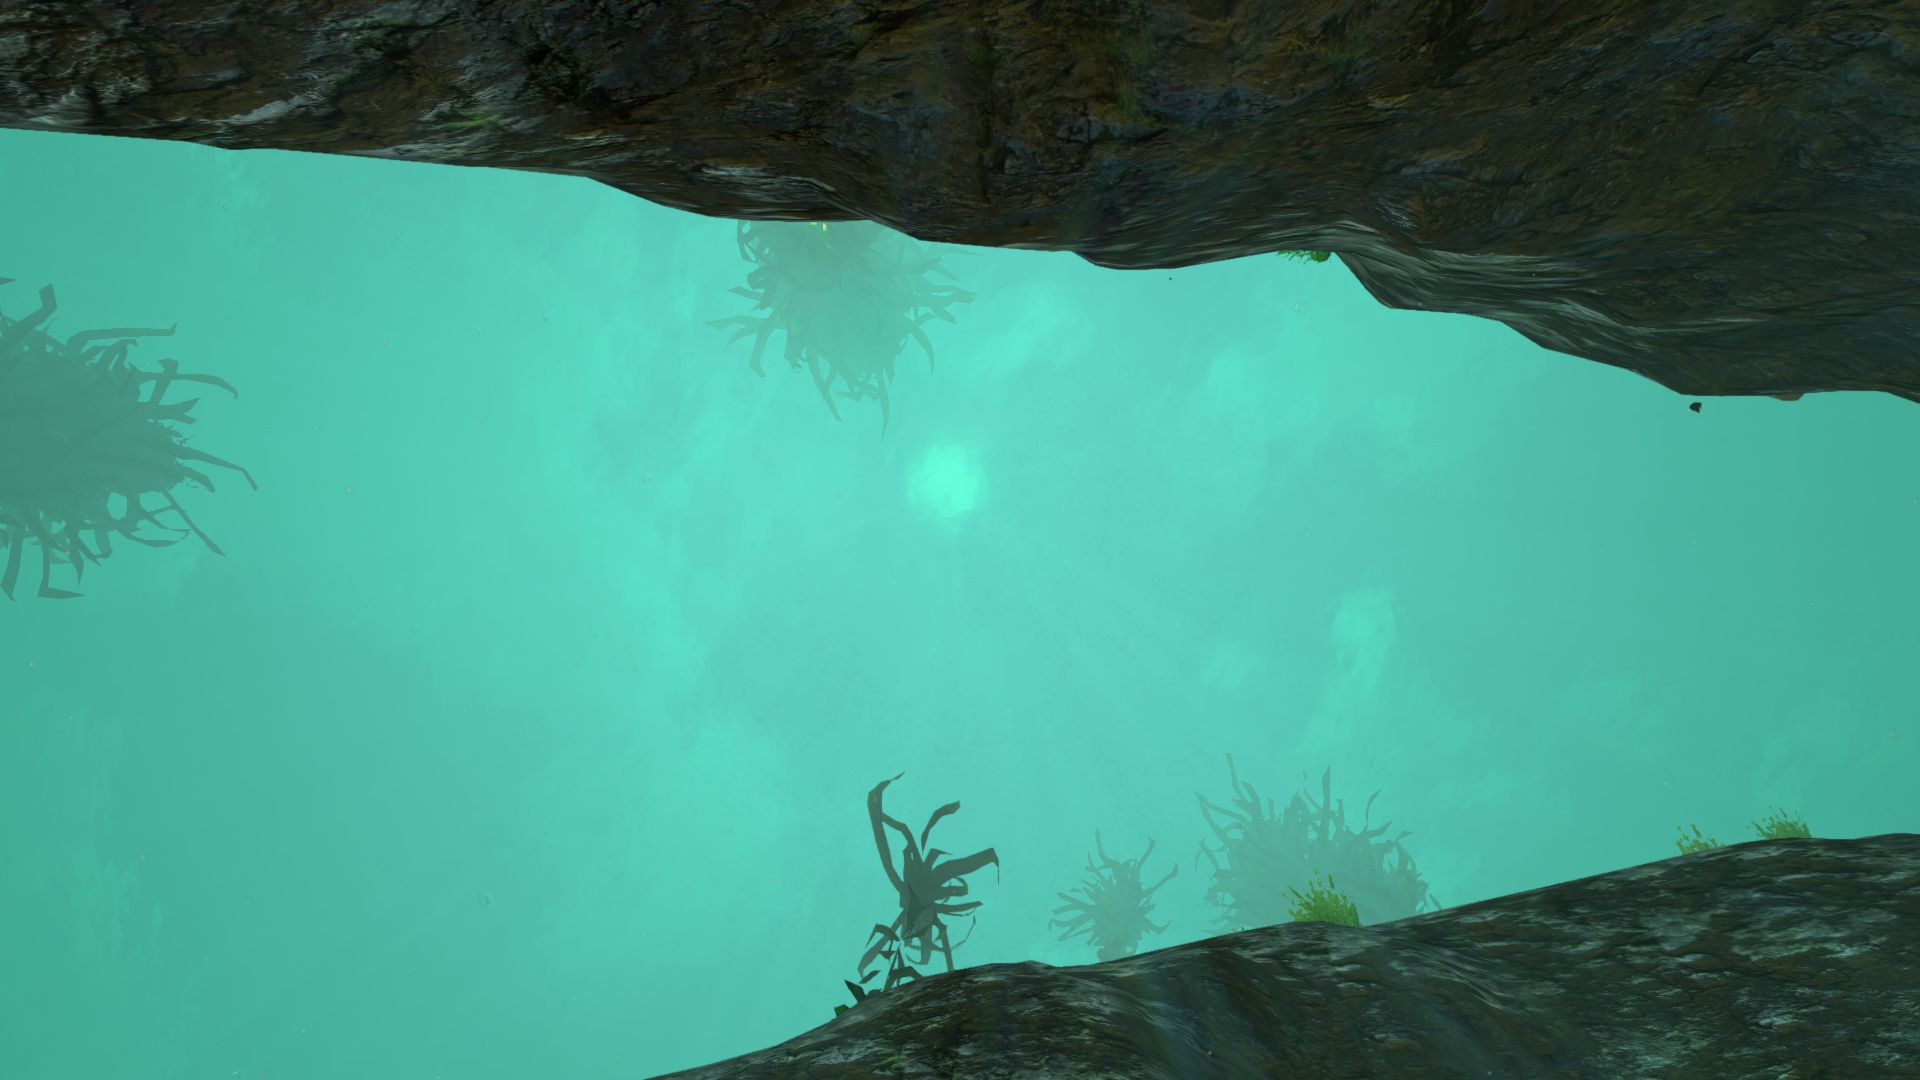 Subnautica - Underwater , HD Wallpaper & Backgrounds